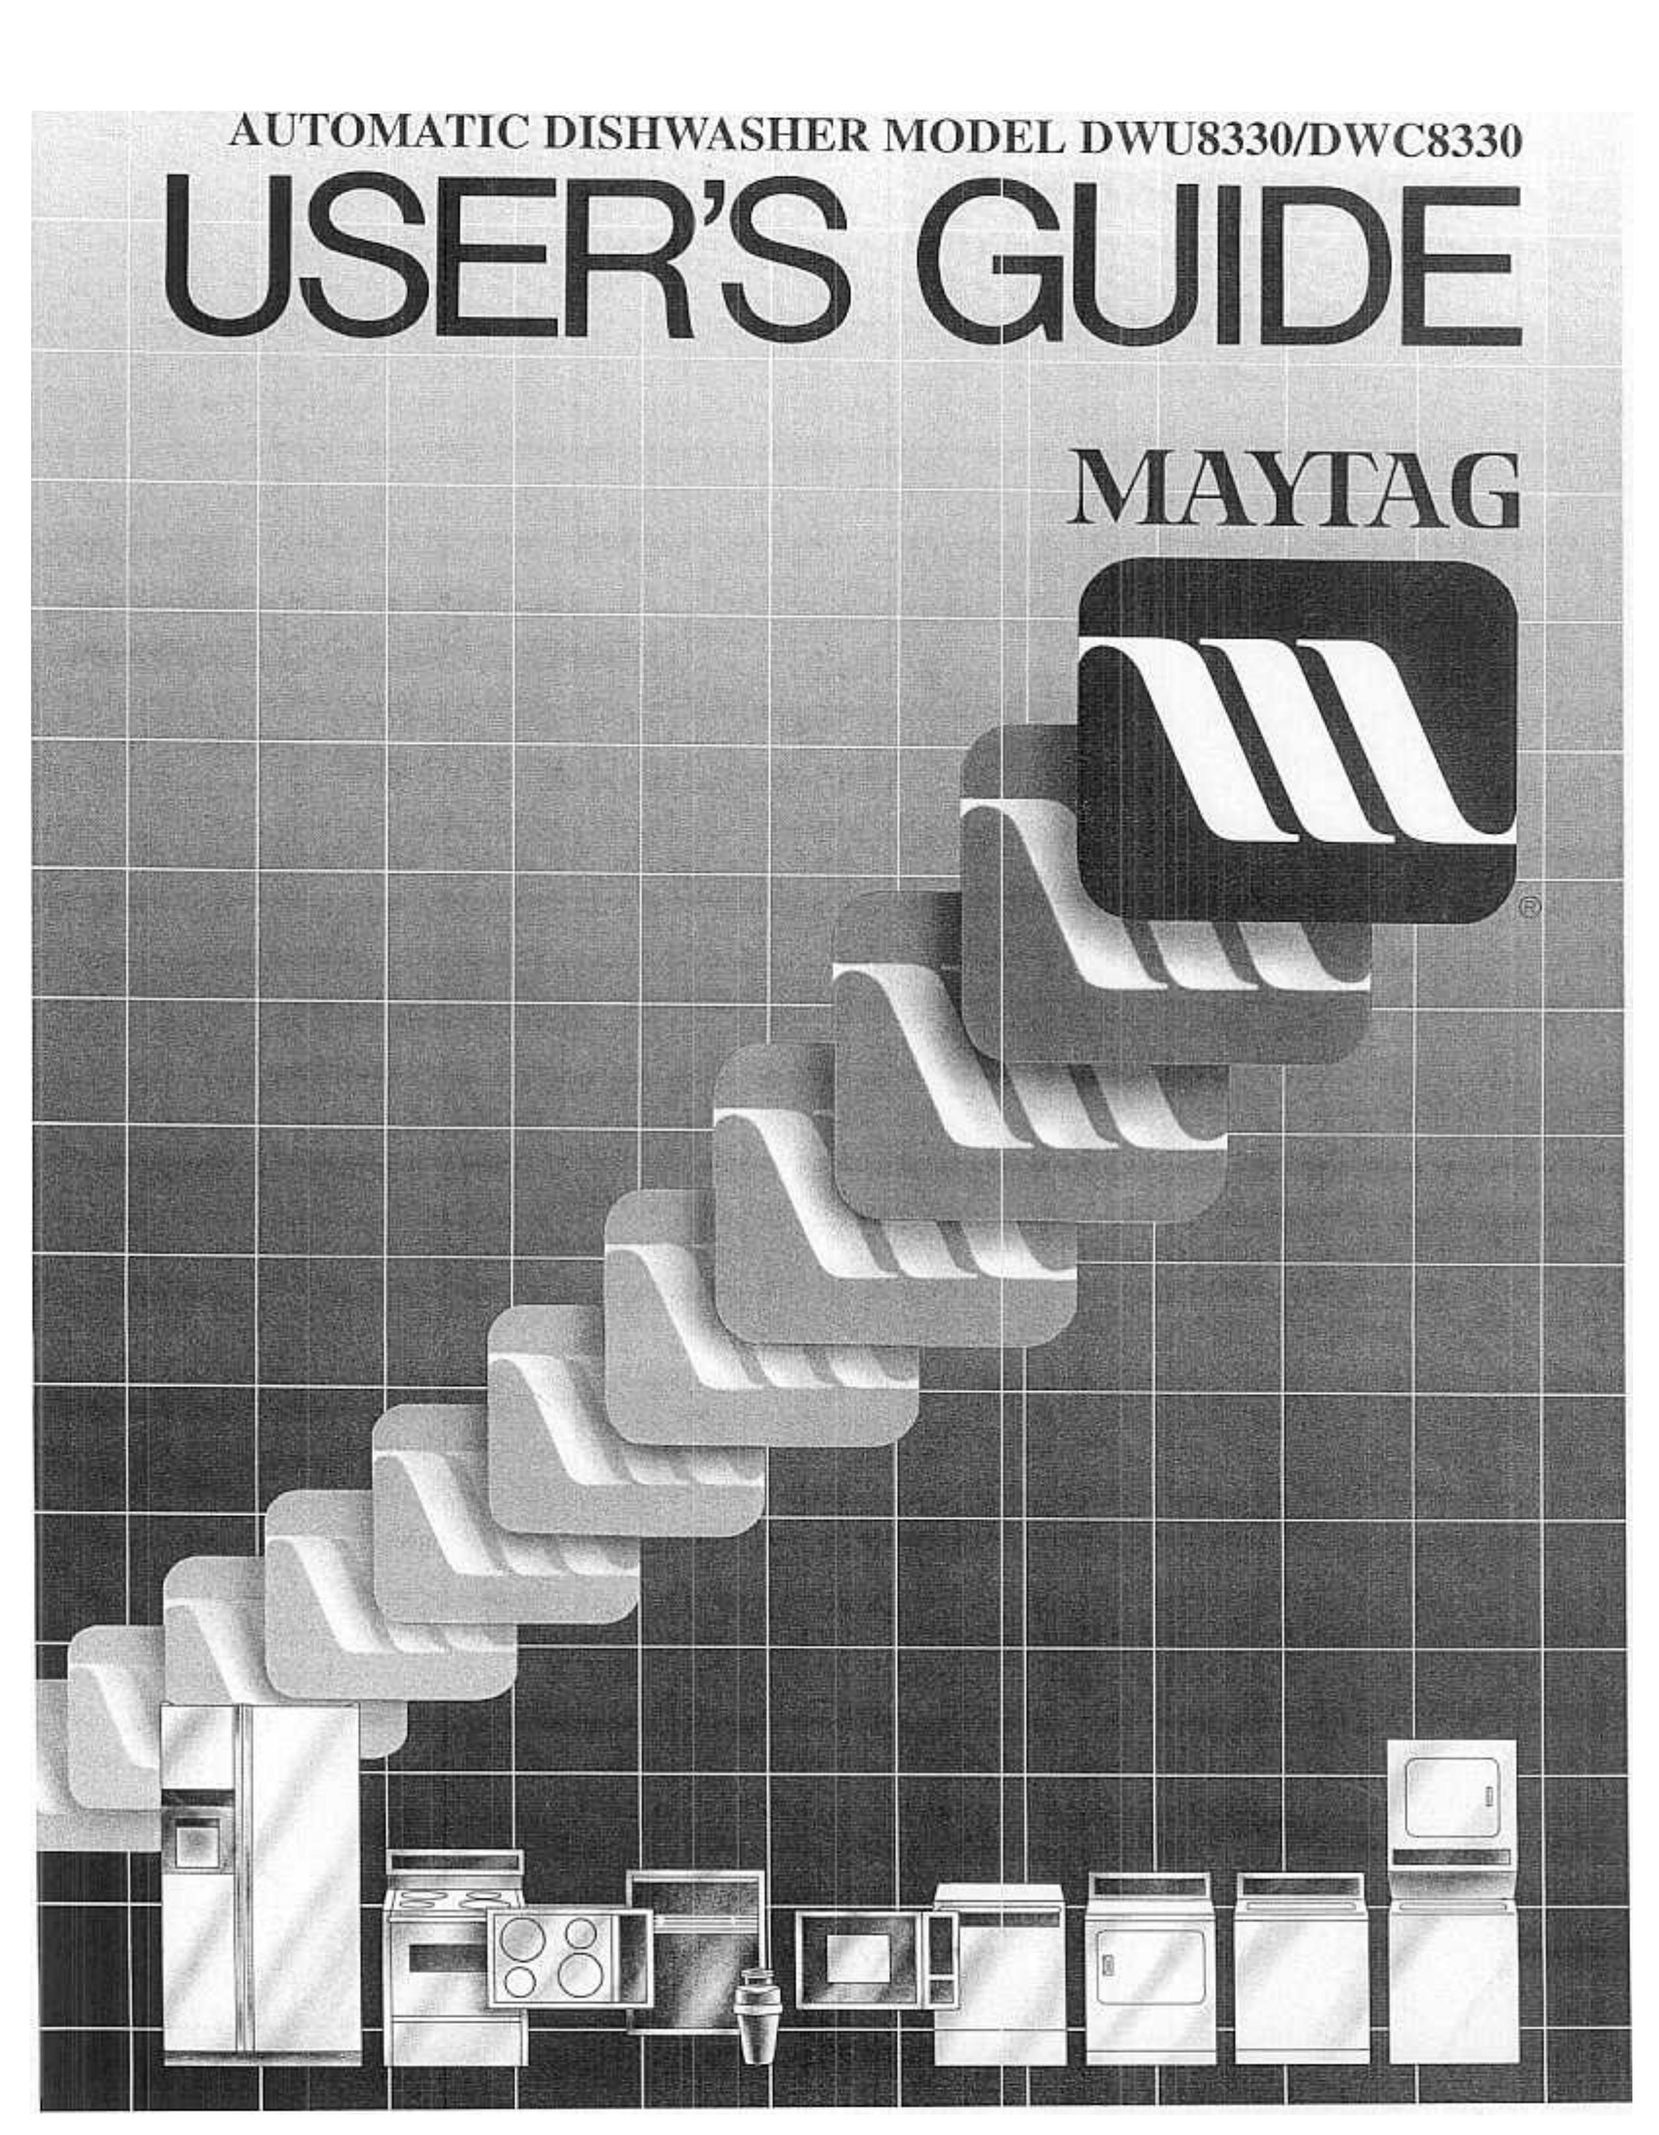 Maytag DWC8330 Dishwasher User Manual